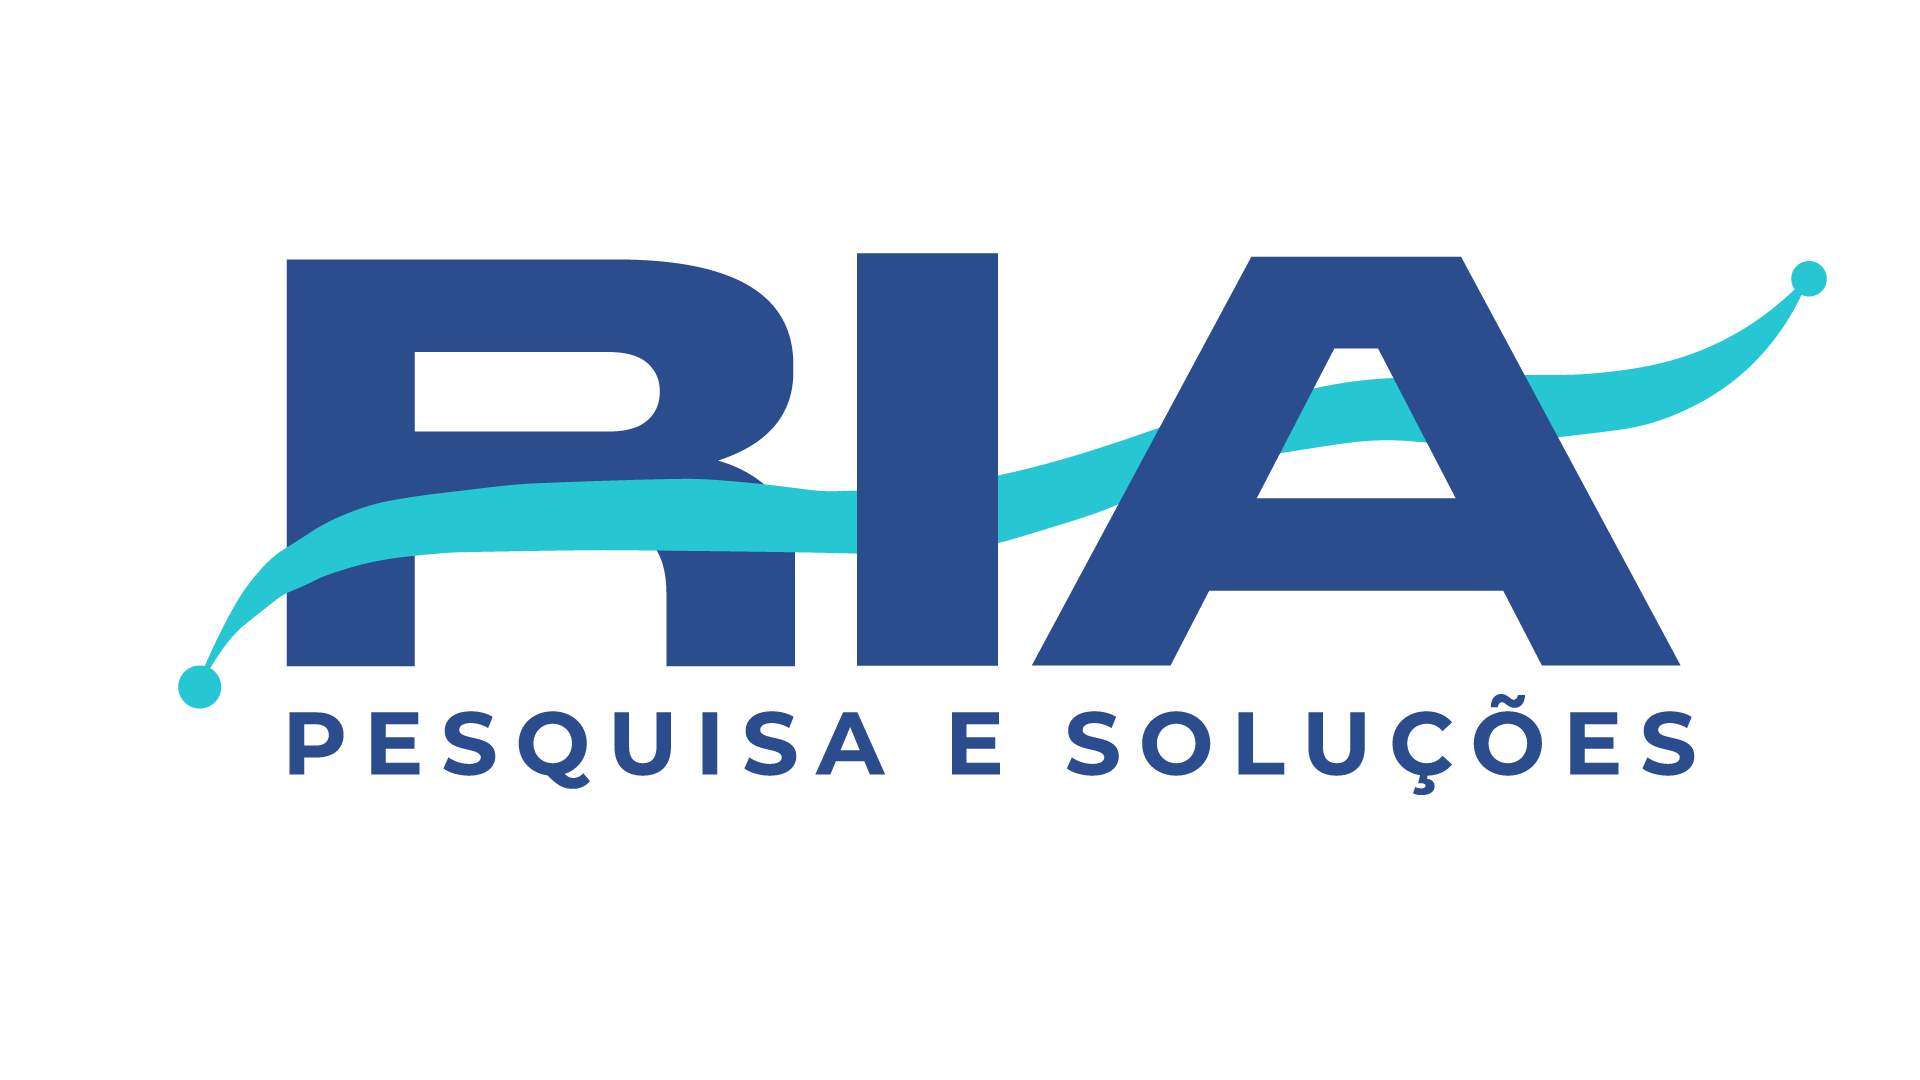 Logo RIA